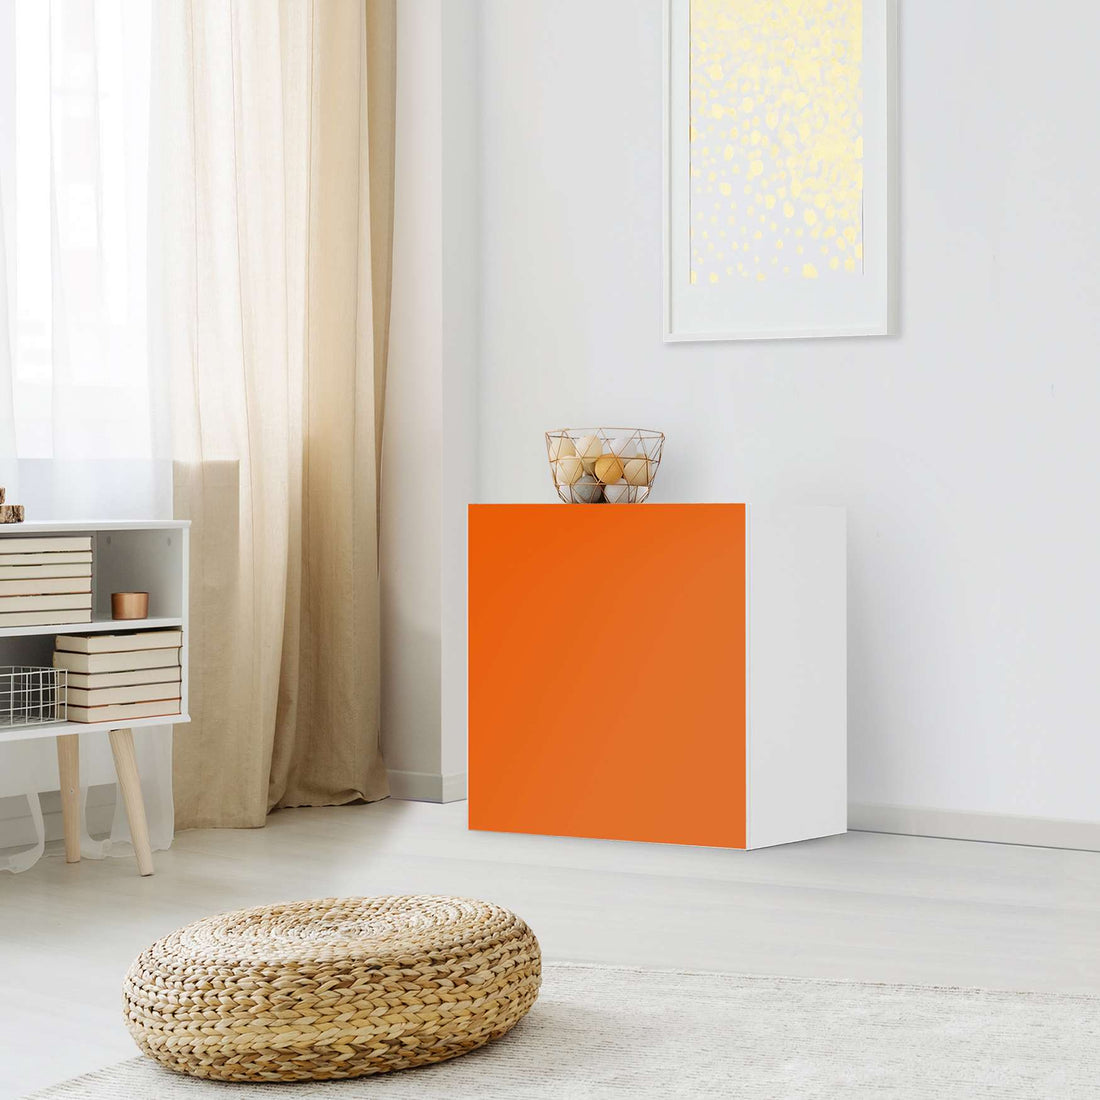 Klebefolie für Möbel Orange Dark - IKEA Besta Regal 1 Türe - Wohnzimmer